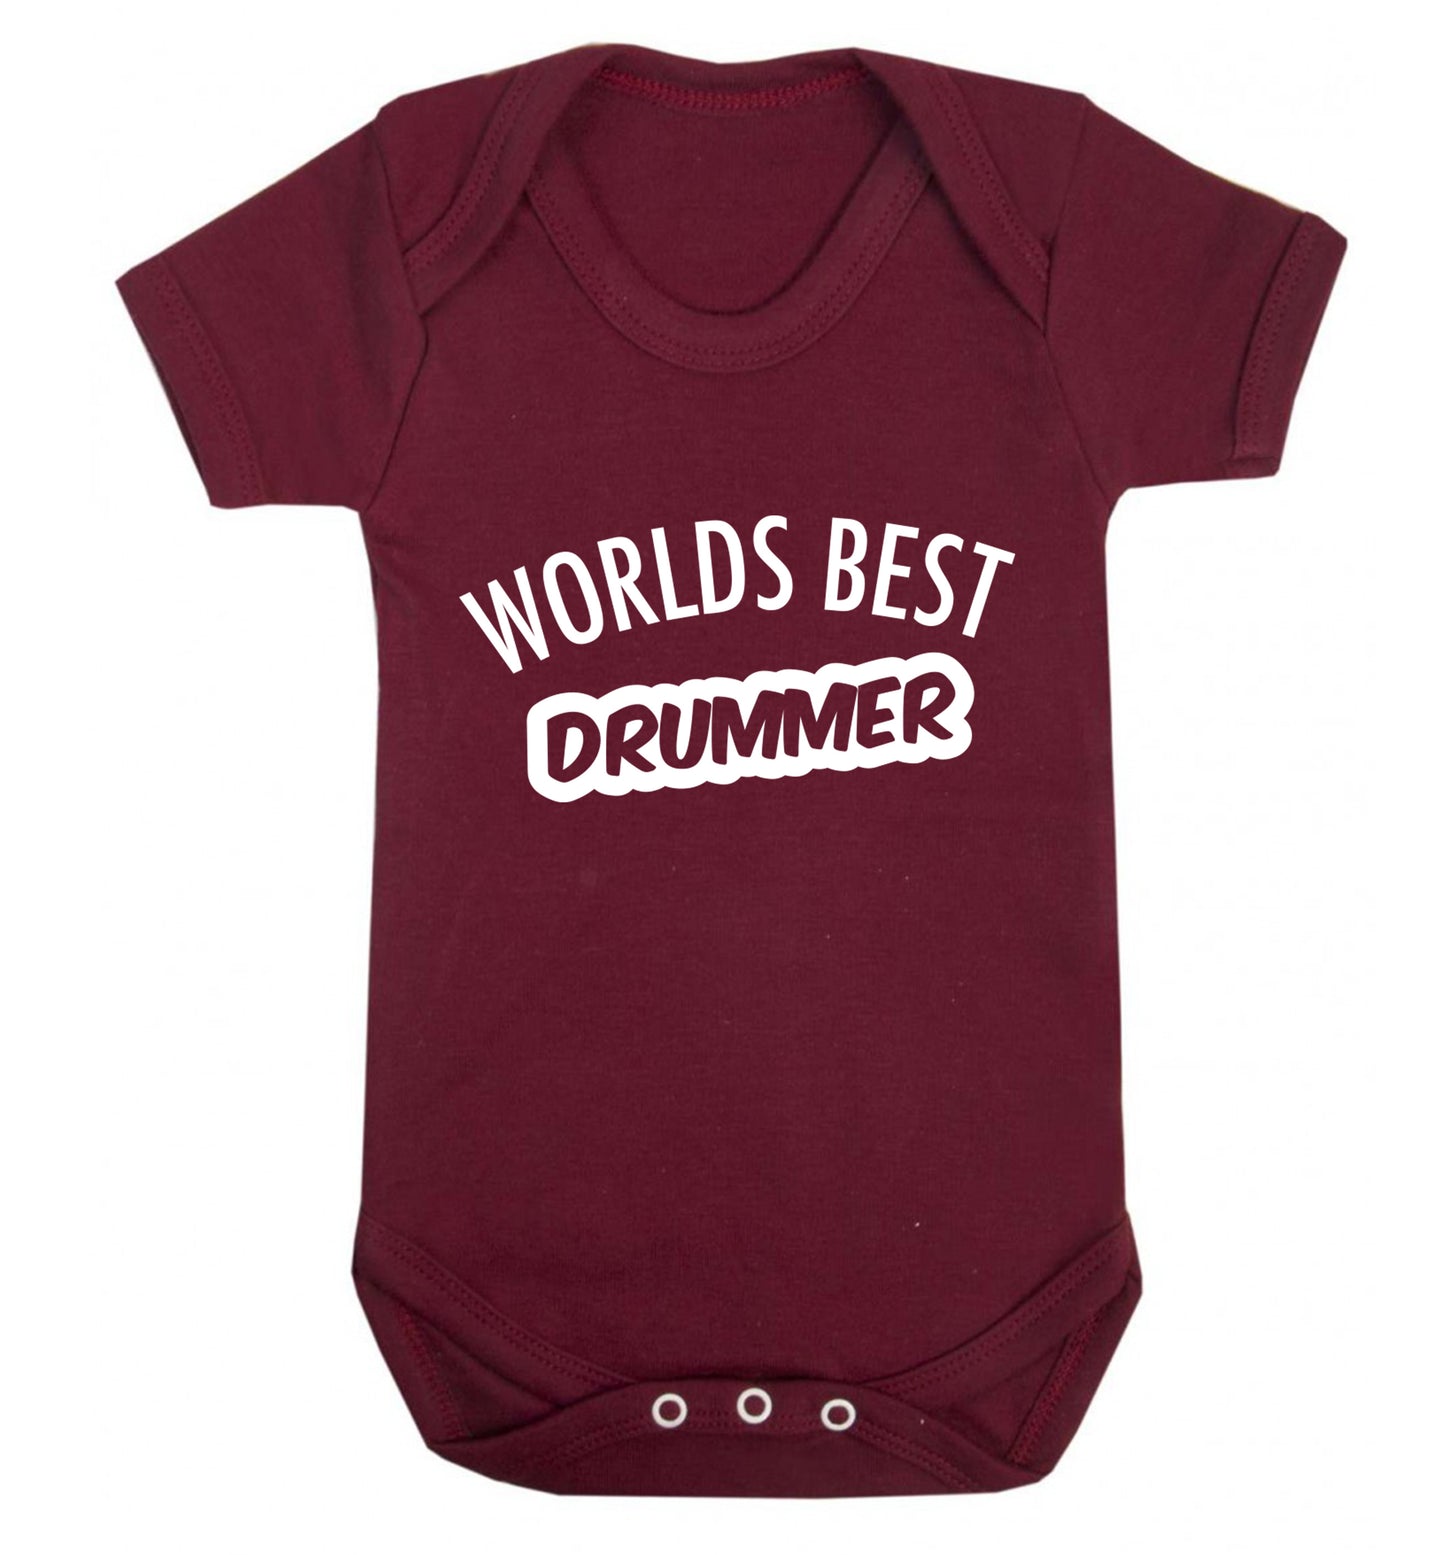 Worlds best drummer Baby Vest maroon 18-24 months